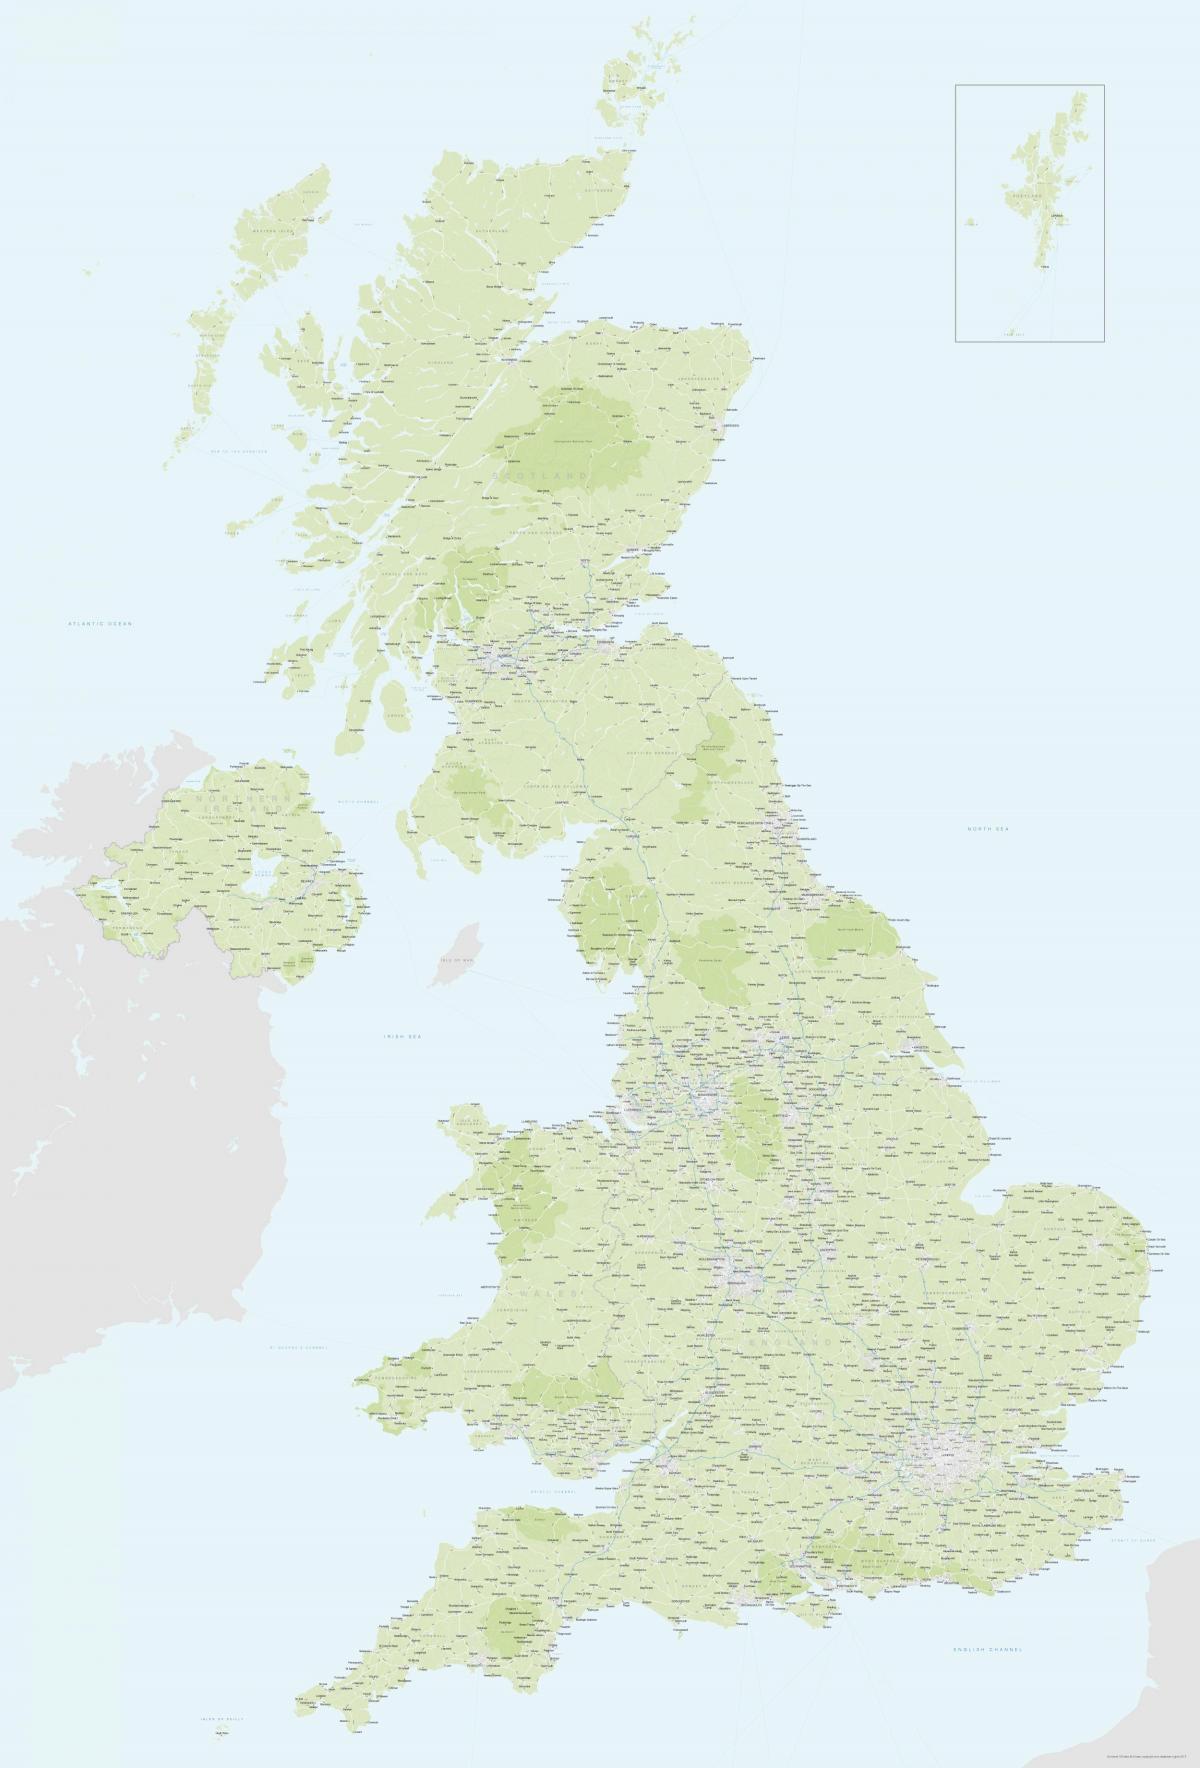 خريطة كبيرة للمملكة المتحدة (المملكة المتحدة)